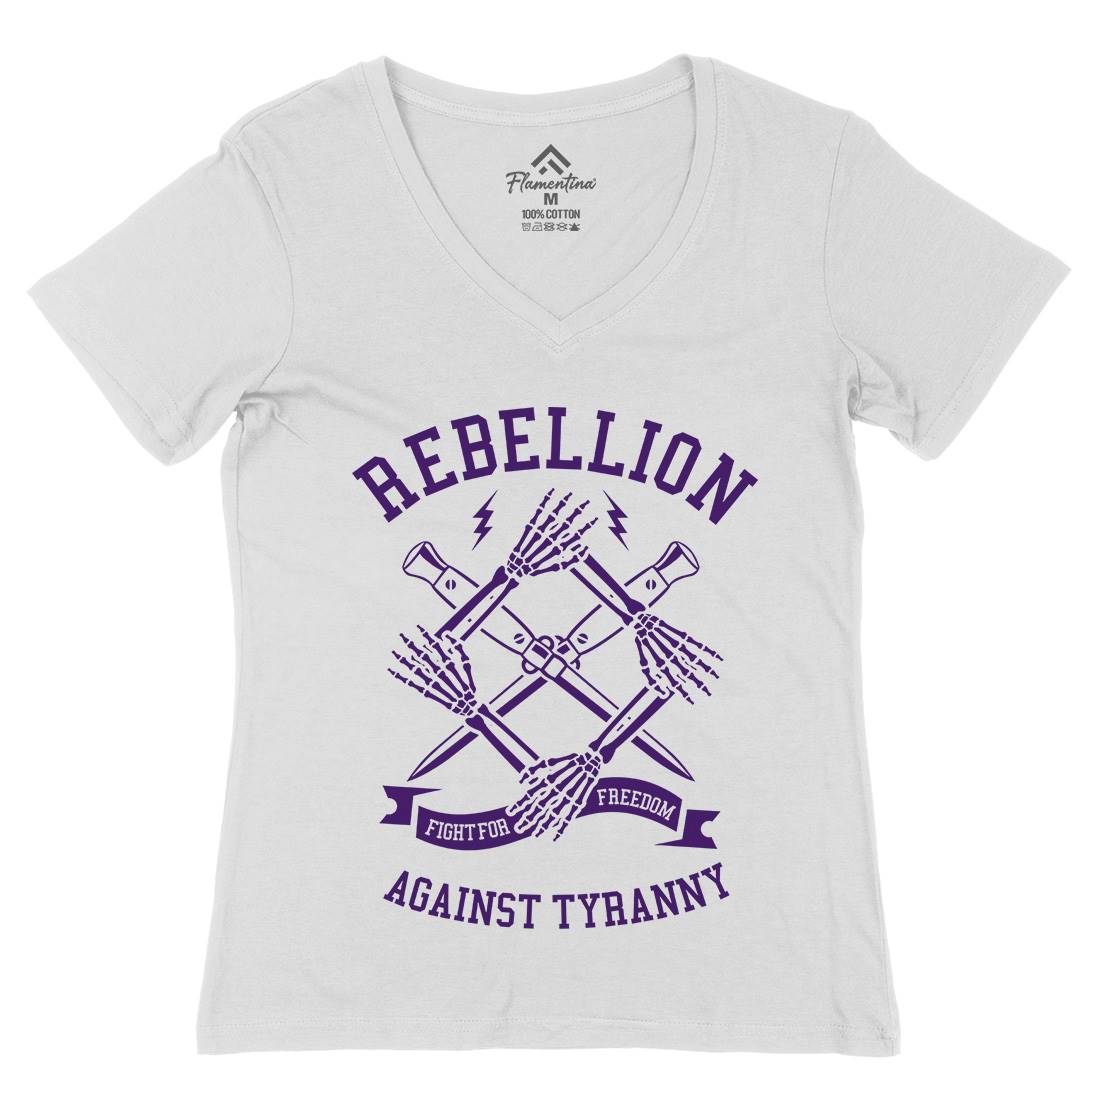 Rebellion Womens Organic V-Neck T-Shirt Illuminati A266